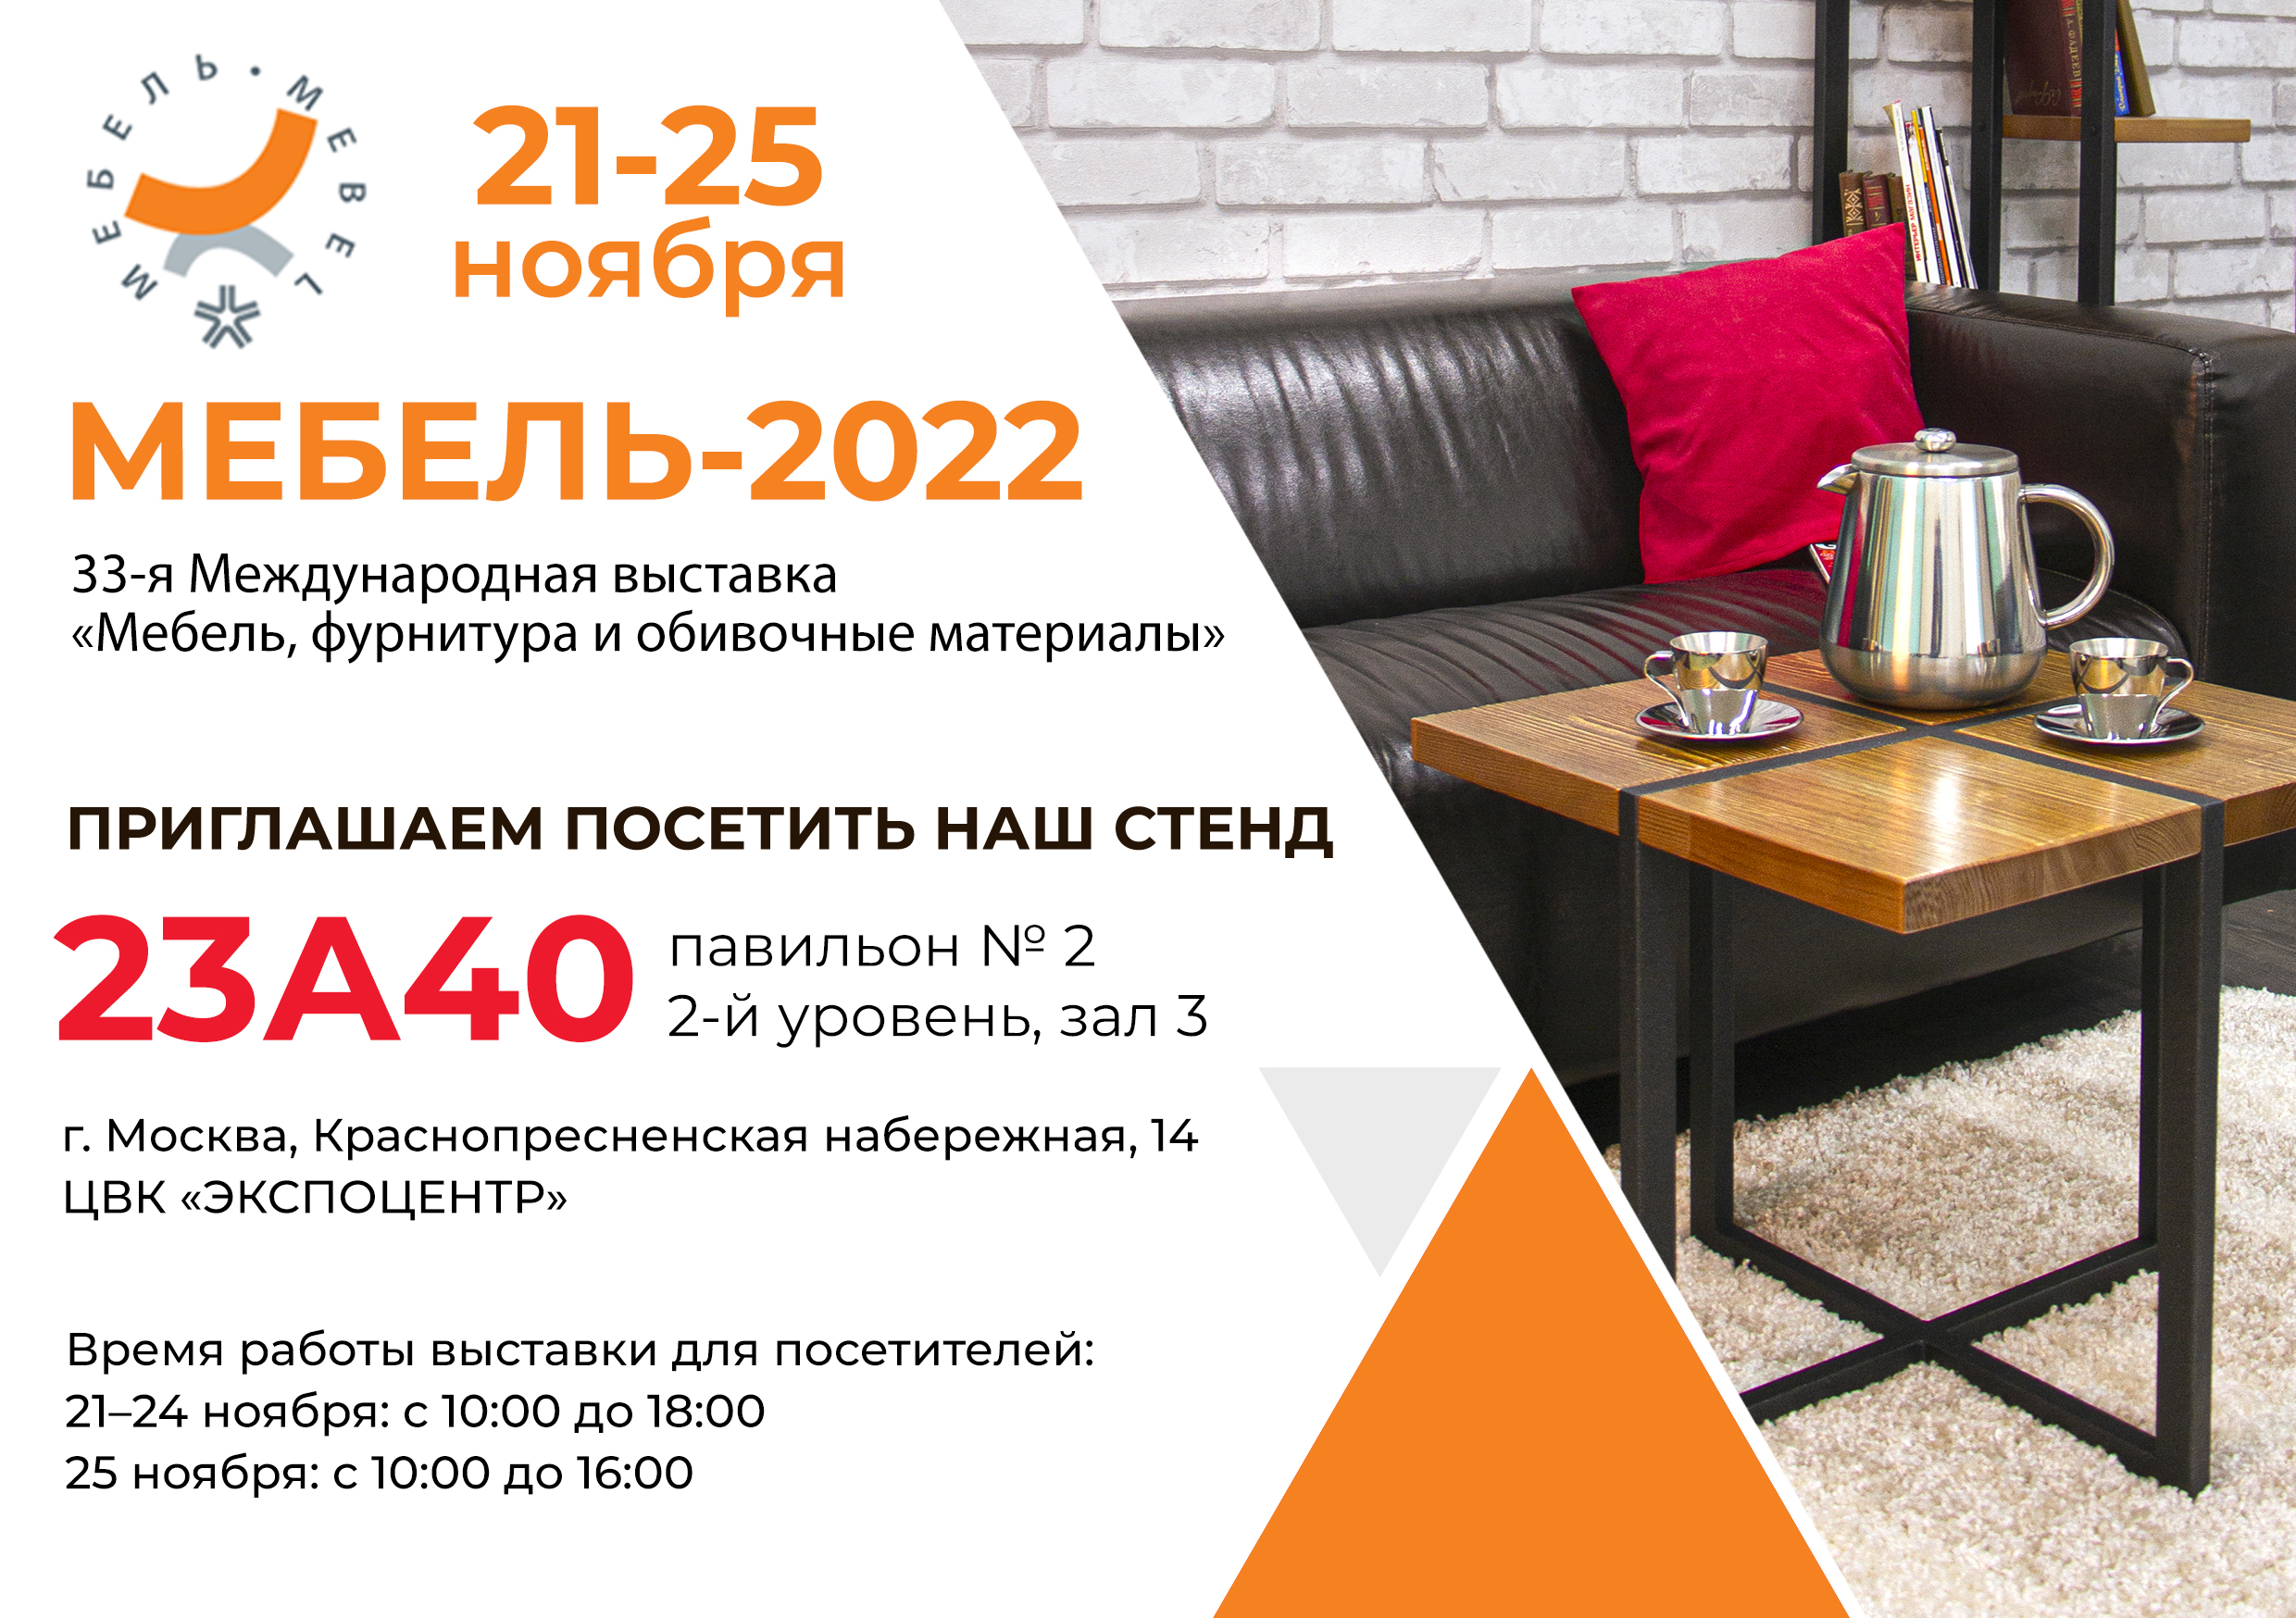 21-25 ноября компания «Аргус» в очередной раз участвует в 33-й Международной выставке «Мебель, фурнитура и обивочные материалы» в г. Москве